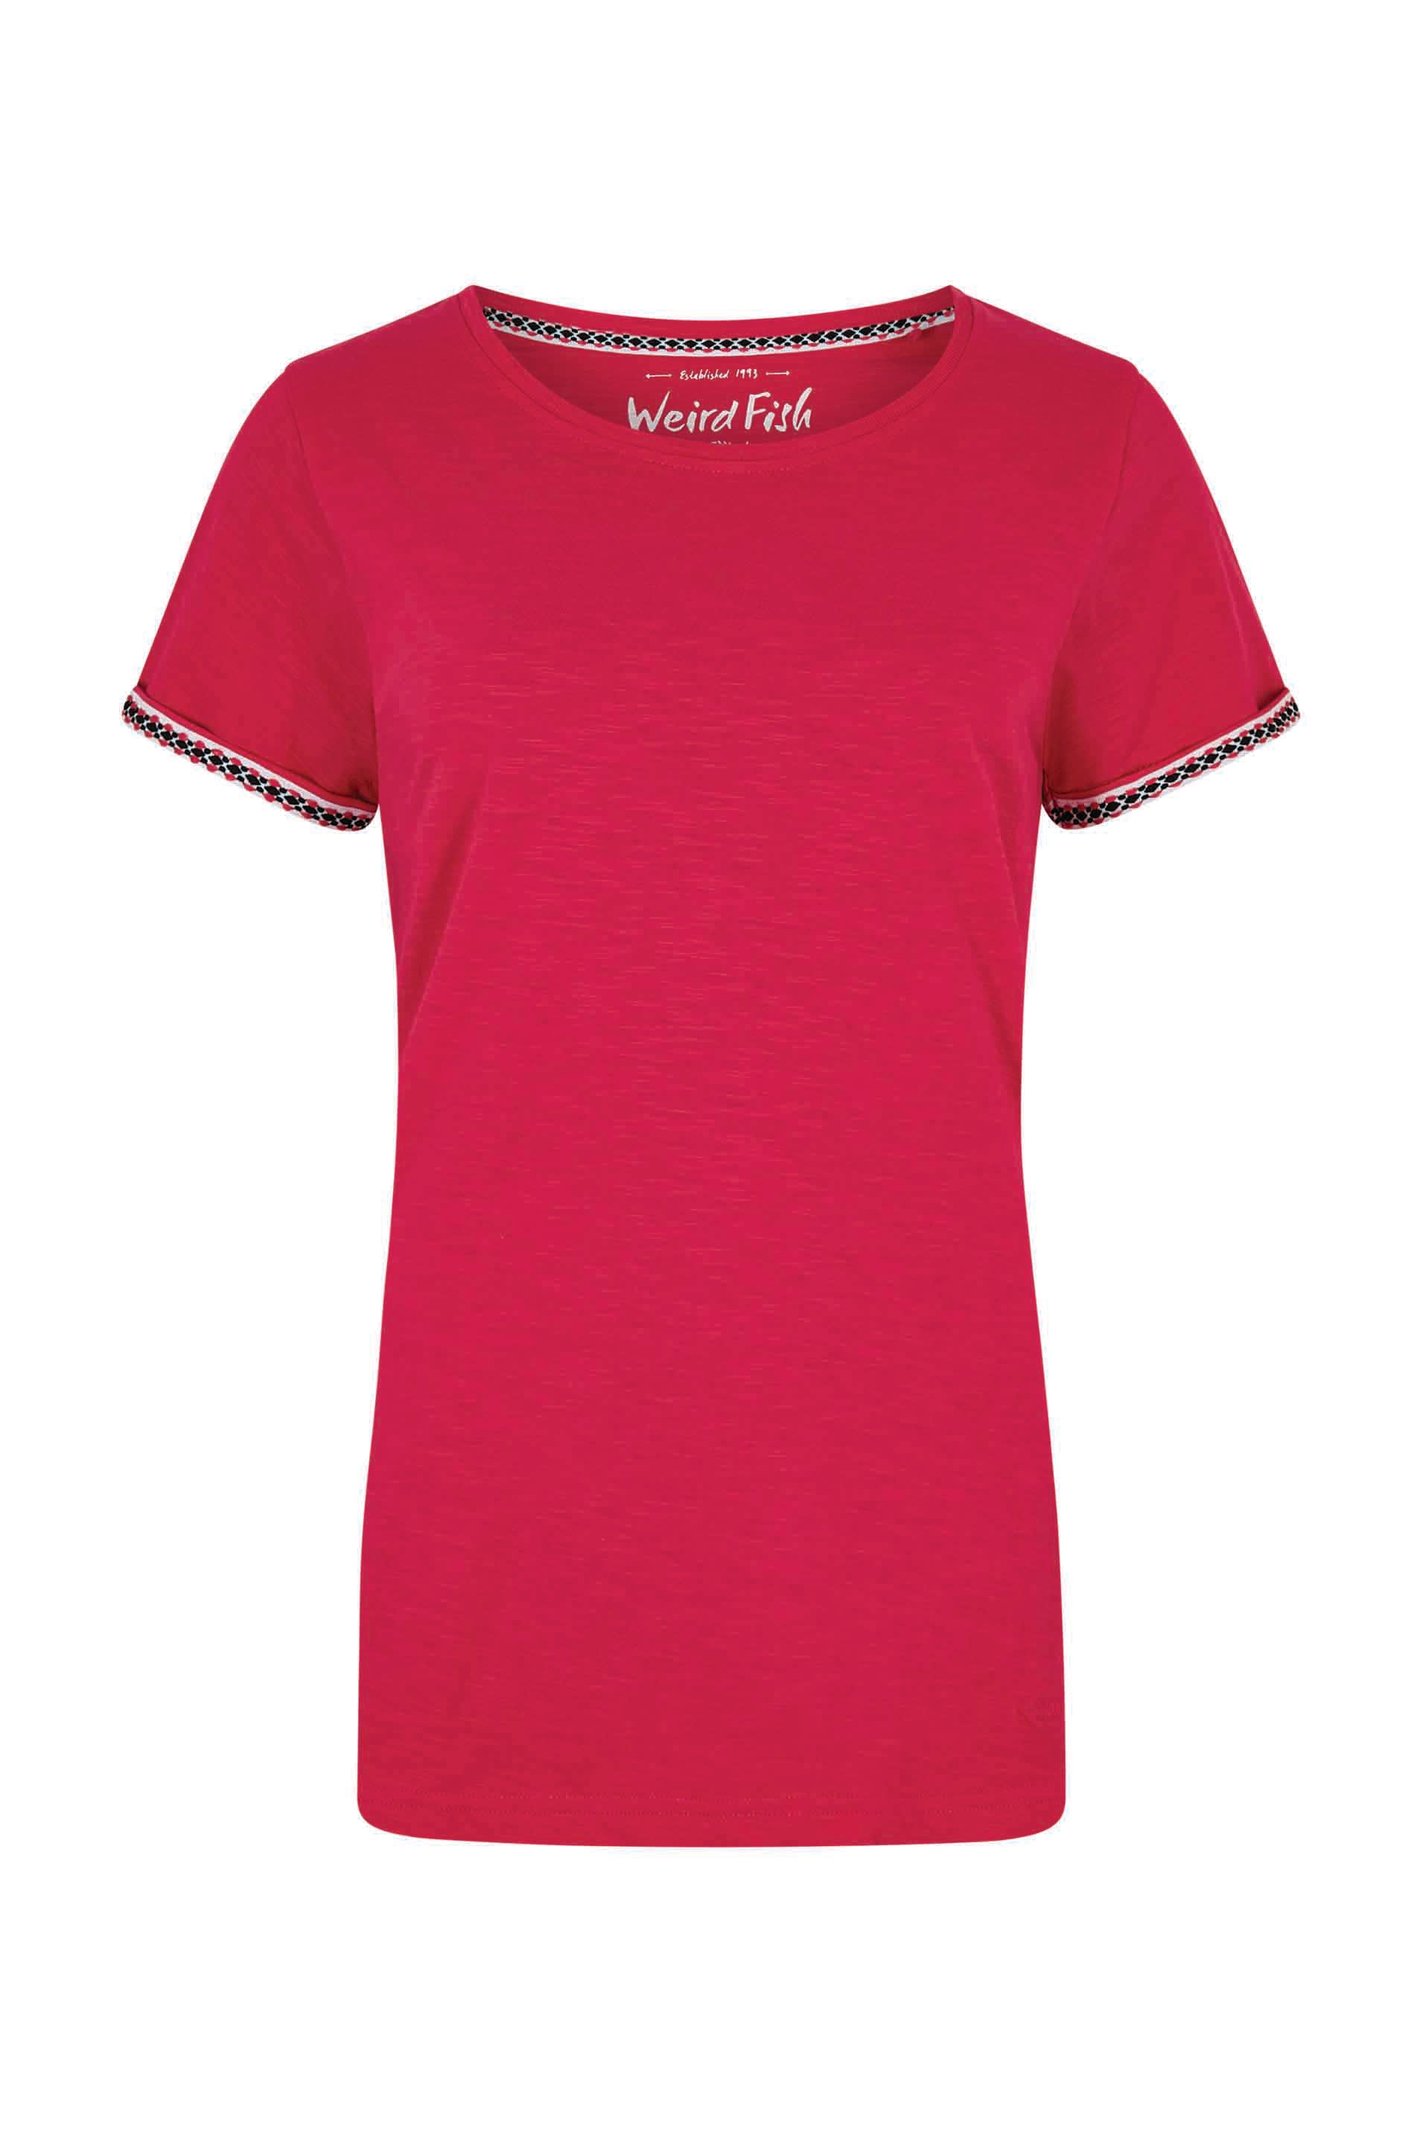 Weird Fish Teya Organic Cotton T-Shirt Hot Pink Size 20